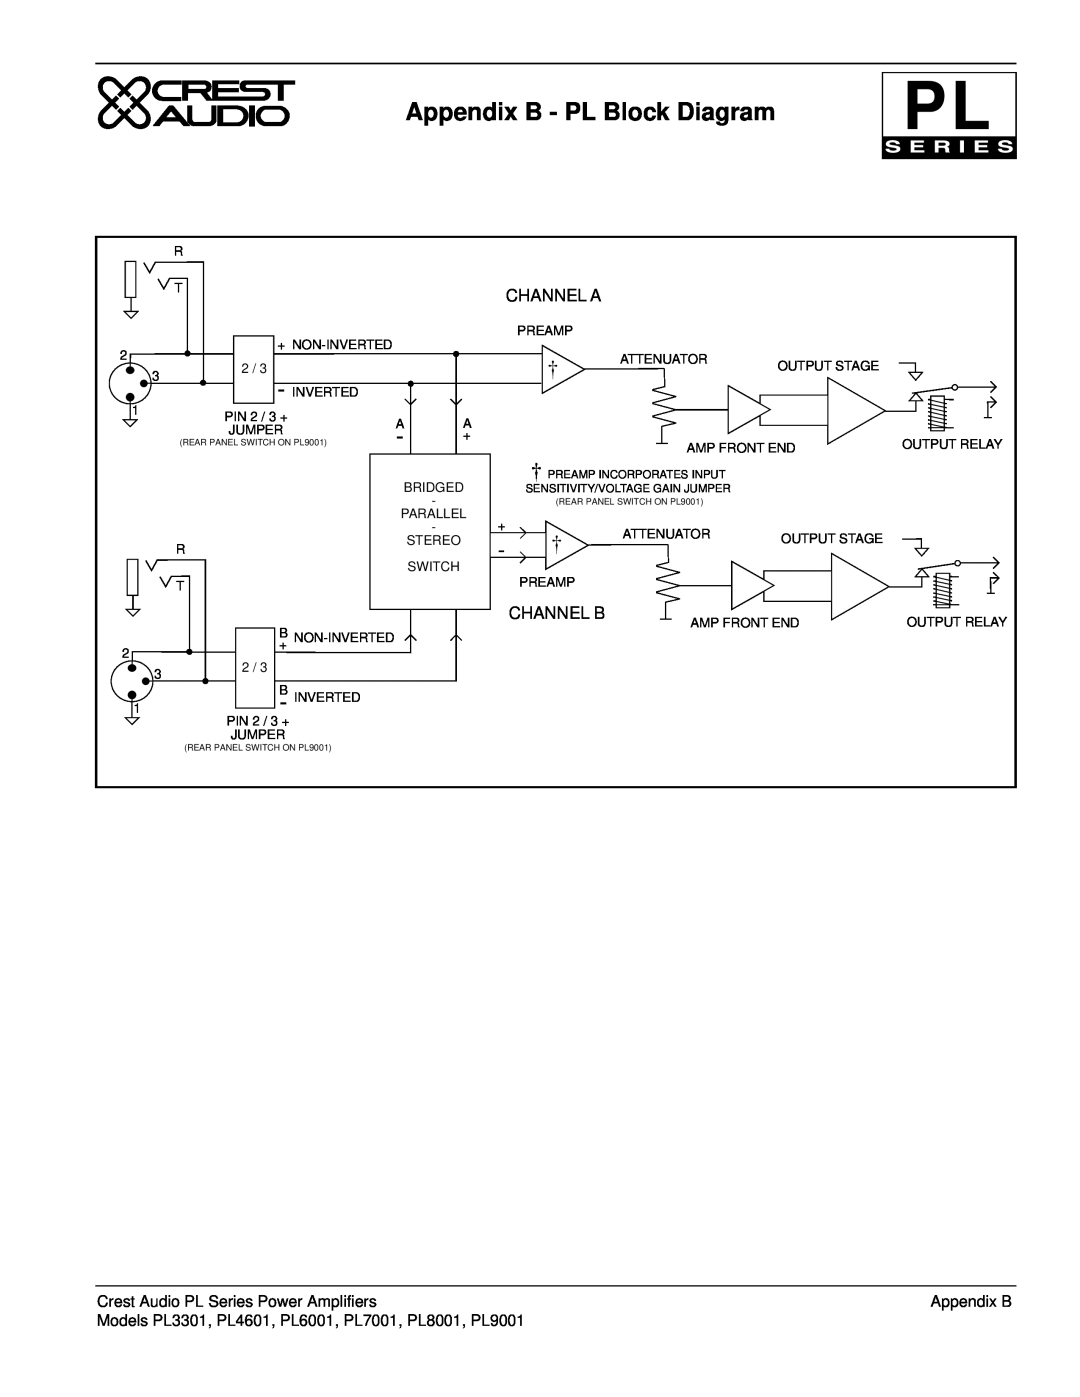 Peavey owner manual Appendix B - PL Block Diagram, Channel A, Channel B, Crest Audio PL Series Power Amplifiers 